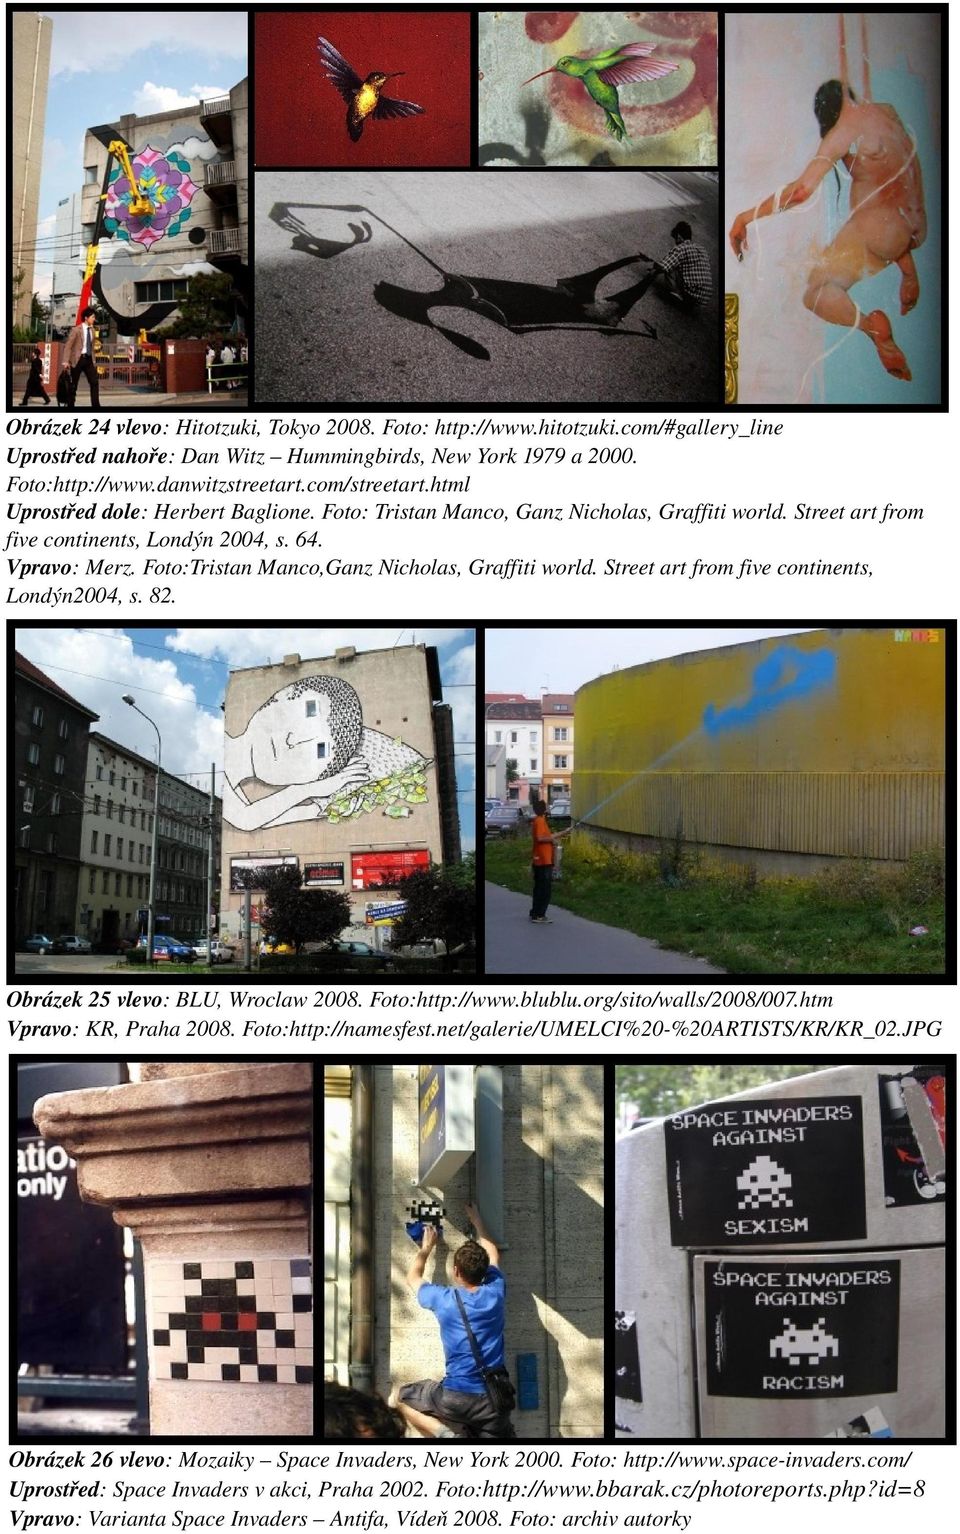 Foto:Tristan Manco,Ganz Nicholas, Graffiti world. Street art from five continents, Londýn2004, s. 82. Obrázek 25 vlevo: BLU, Wroclaw 2008. Foto:http://www.blublu.org/sito/walls/2008/007.